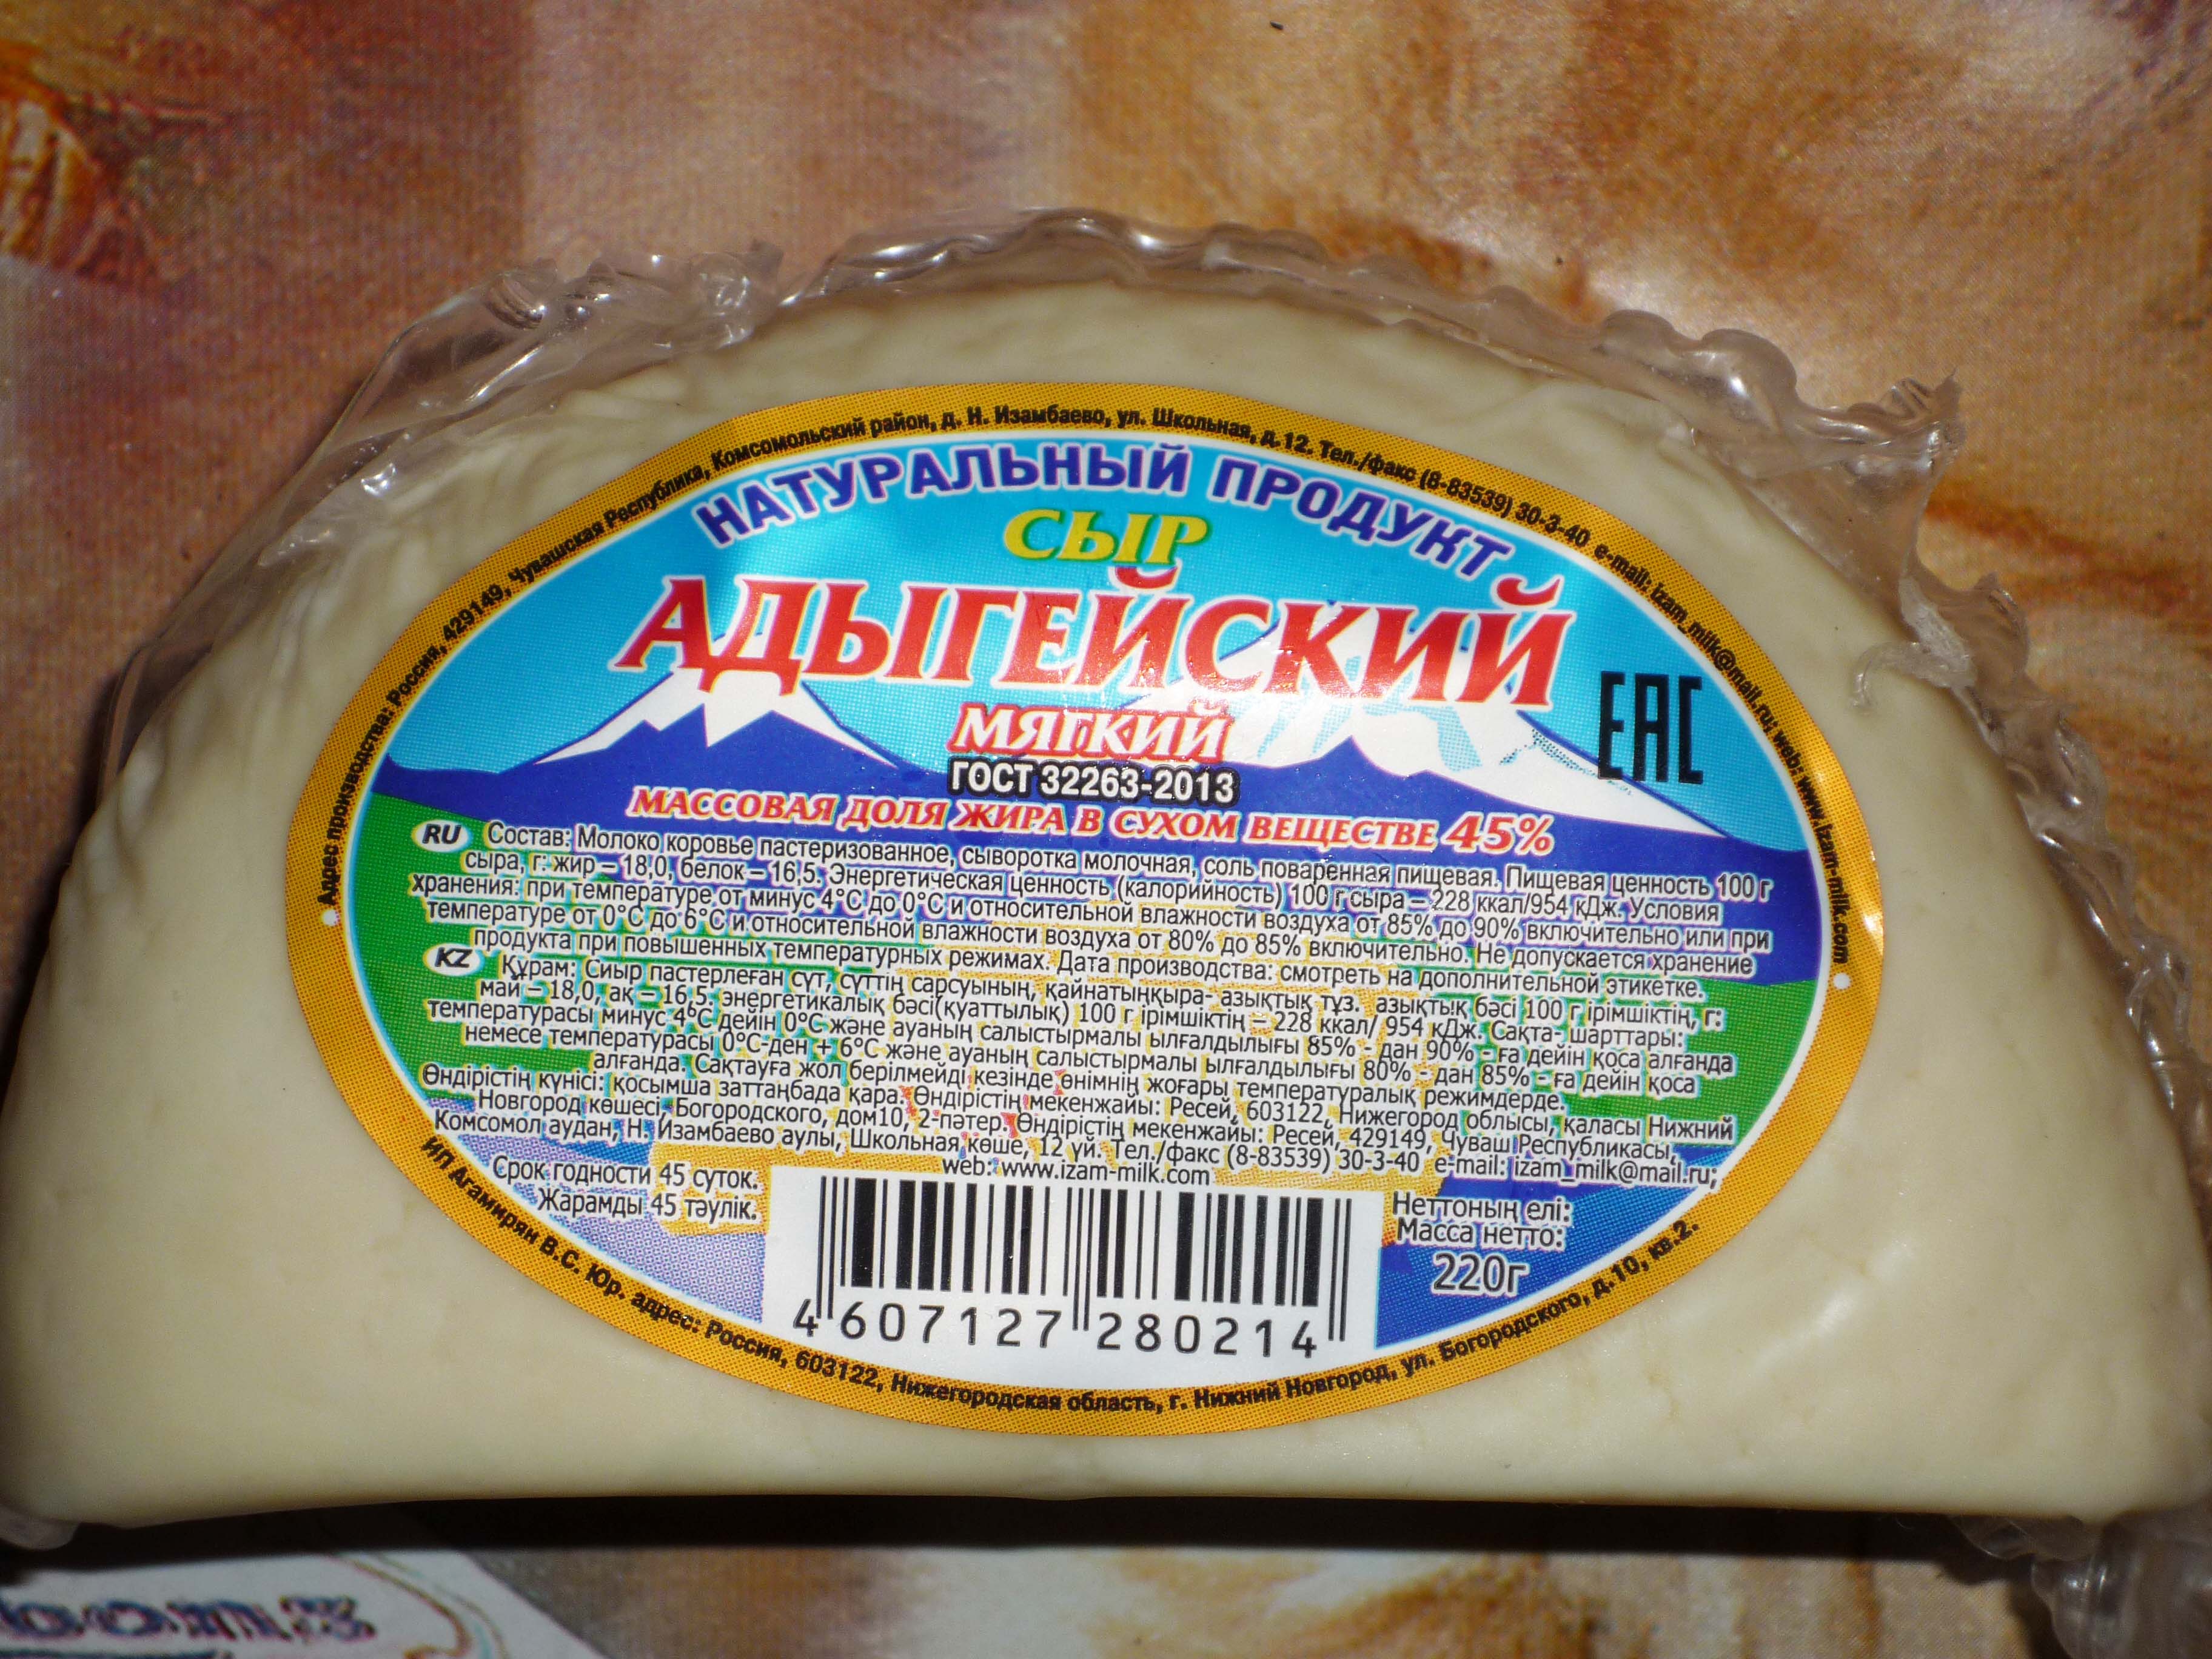 Сыр Адыгейский Фото Упаковок